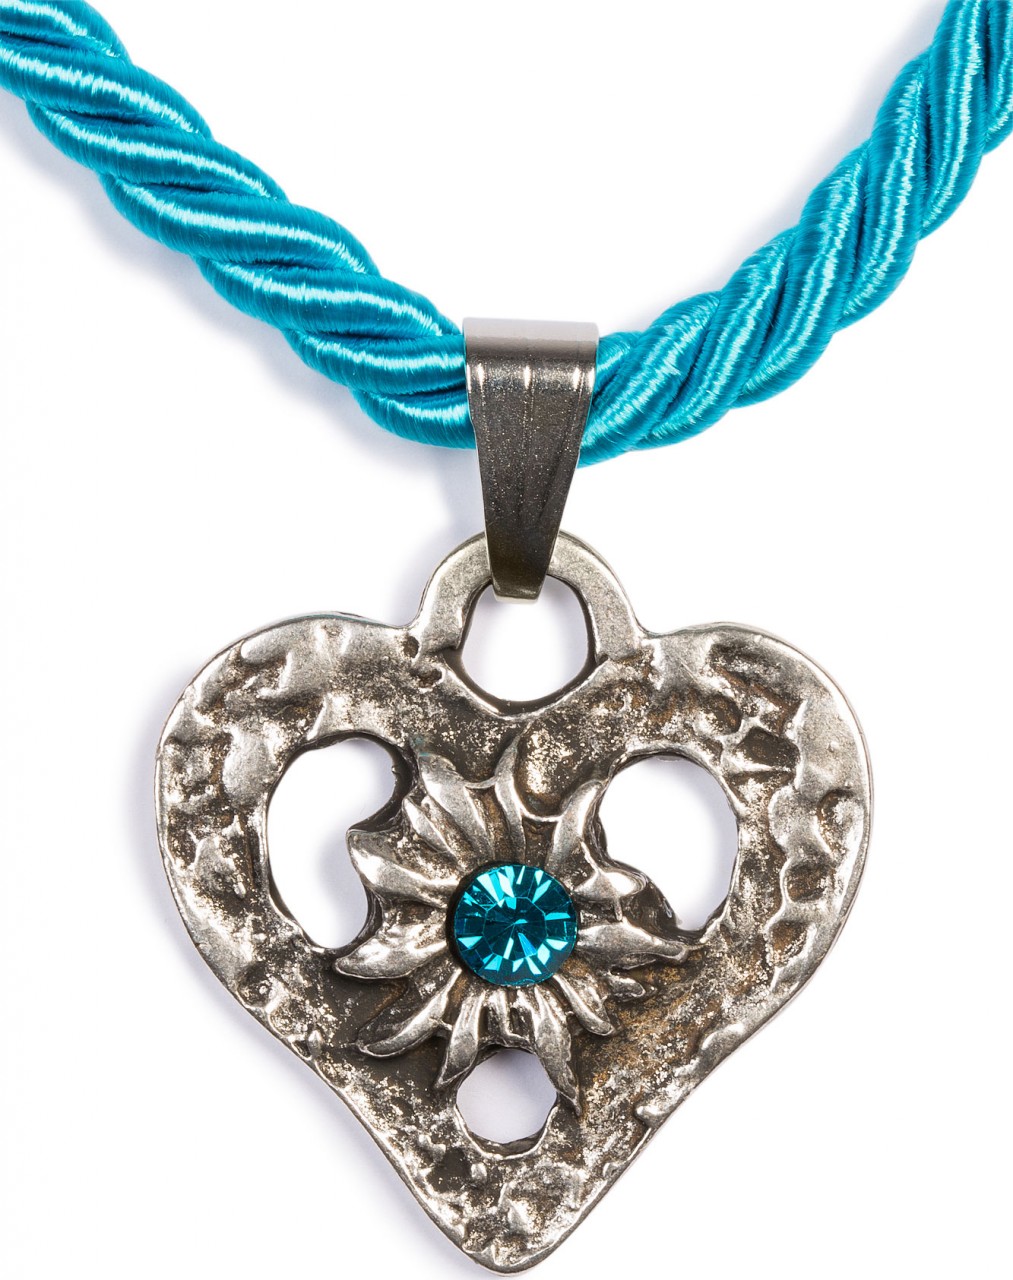 Collier à cordon coeur avec pierre turquoise